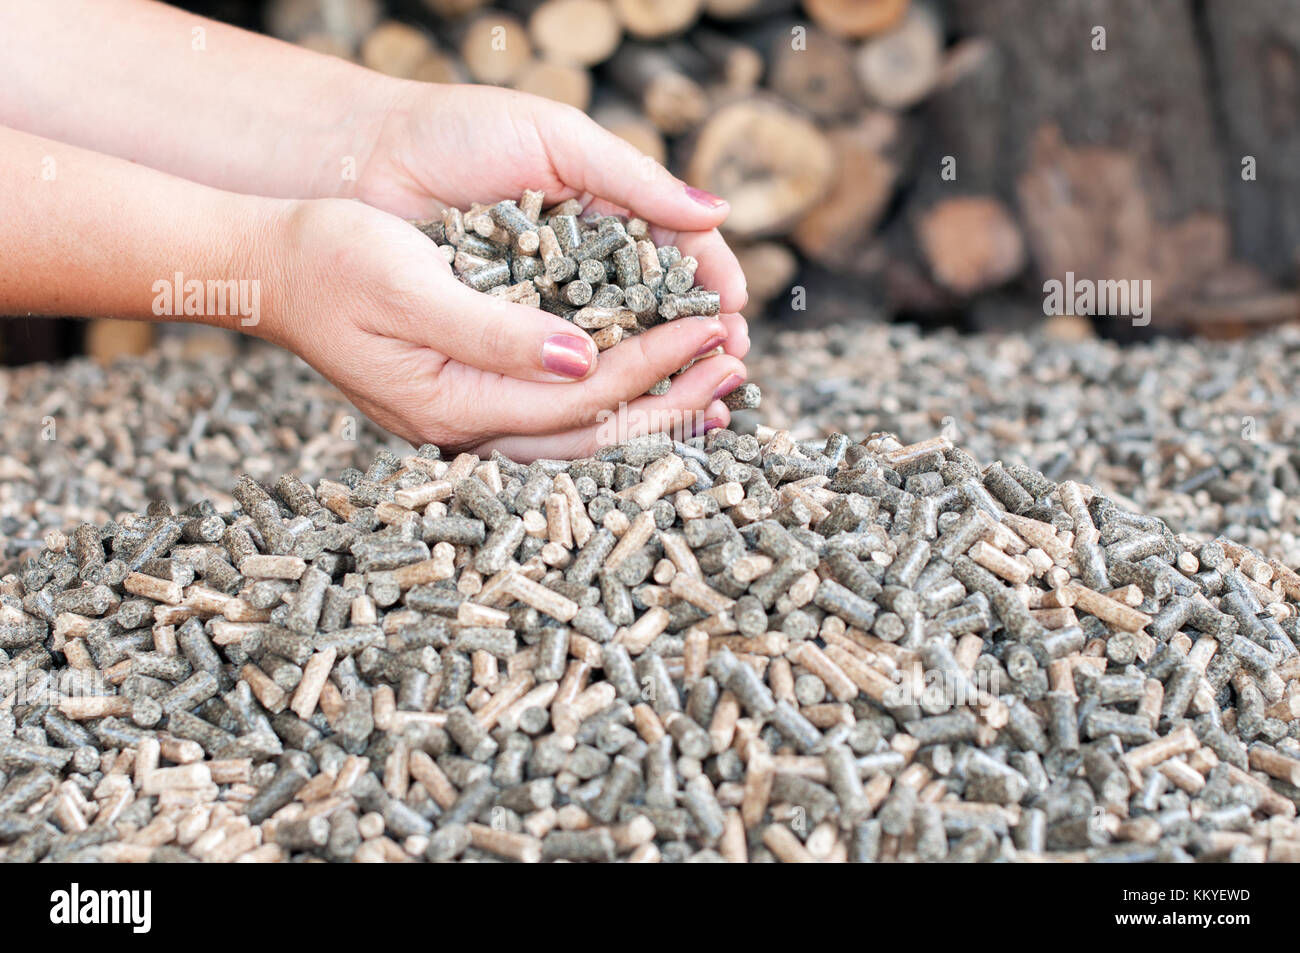 Holz- pellets bei weiblichen Hans - Erneuerbare Energien Stockfoto